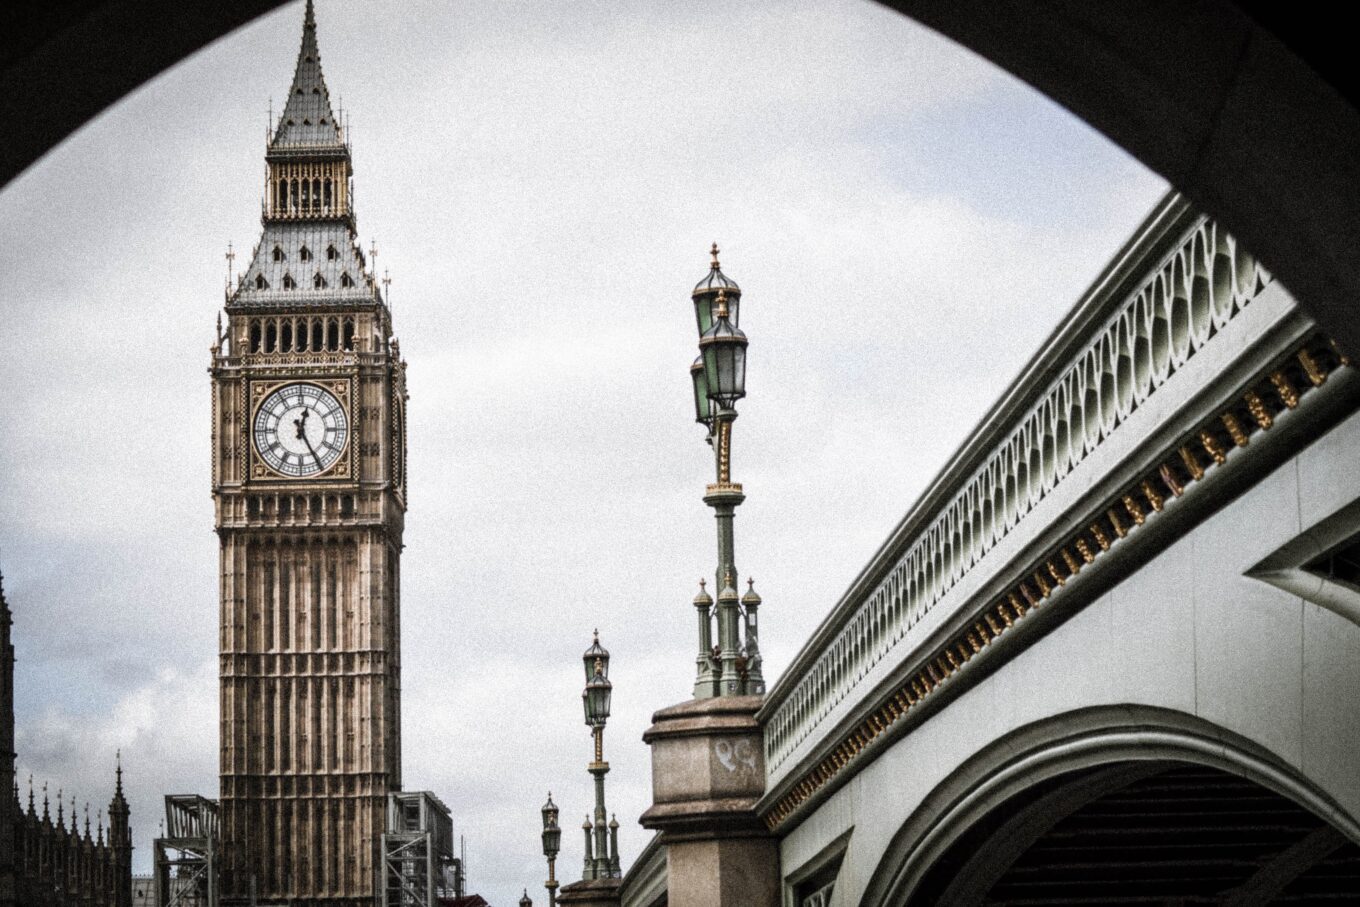 Westminster, London's Big Ben Clock